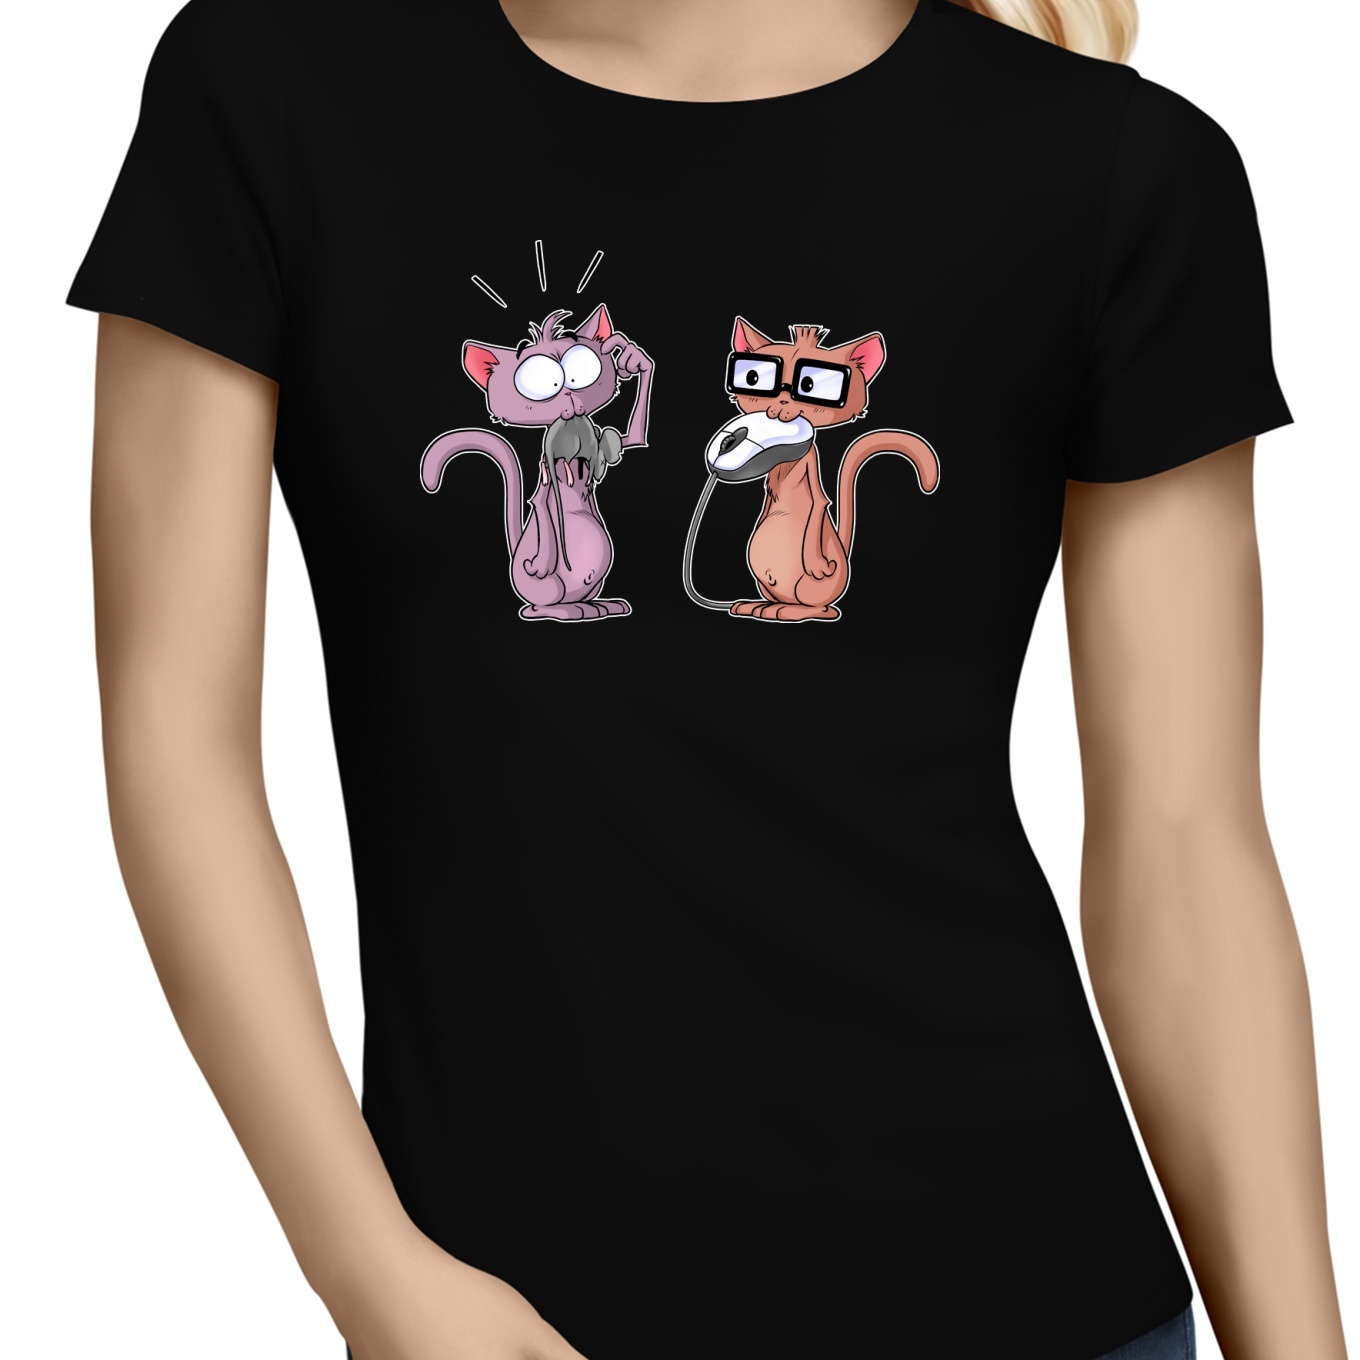 sur T Shirt Humour Geek Cat Chat geek :) T shirt Femme Noir L